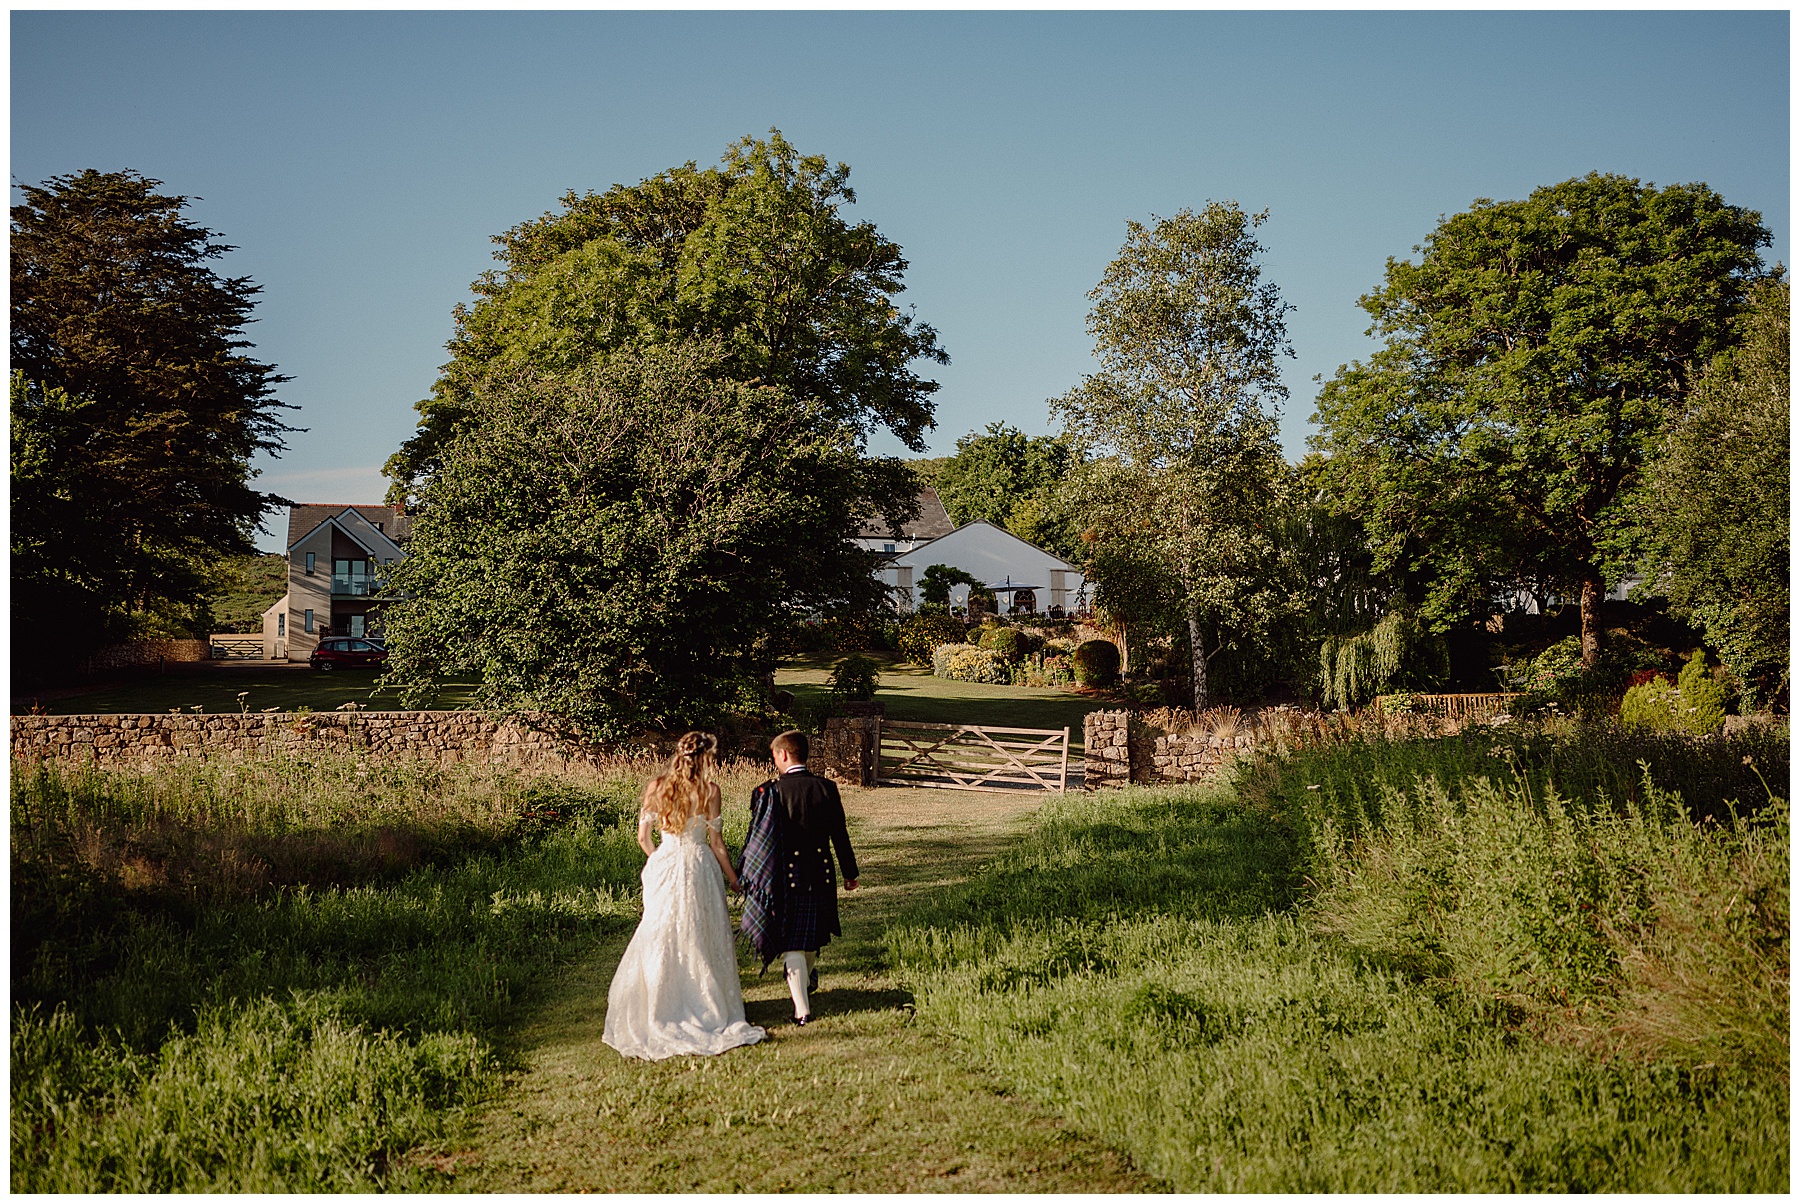 Wedding Photos in Meadow at King Arthur